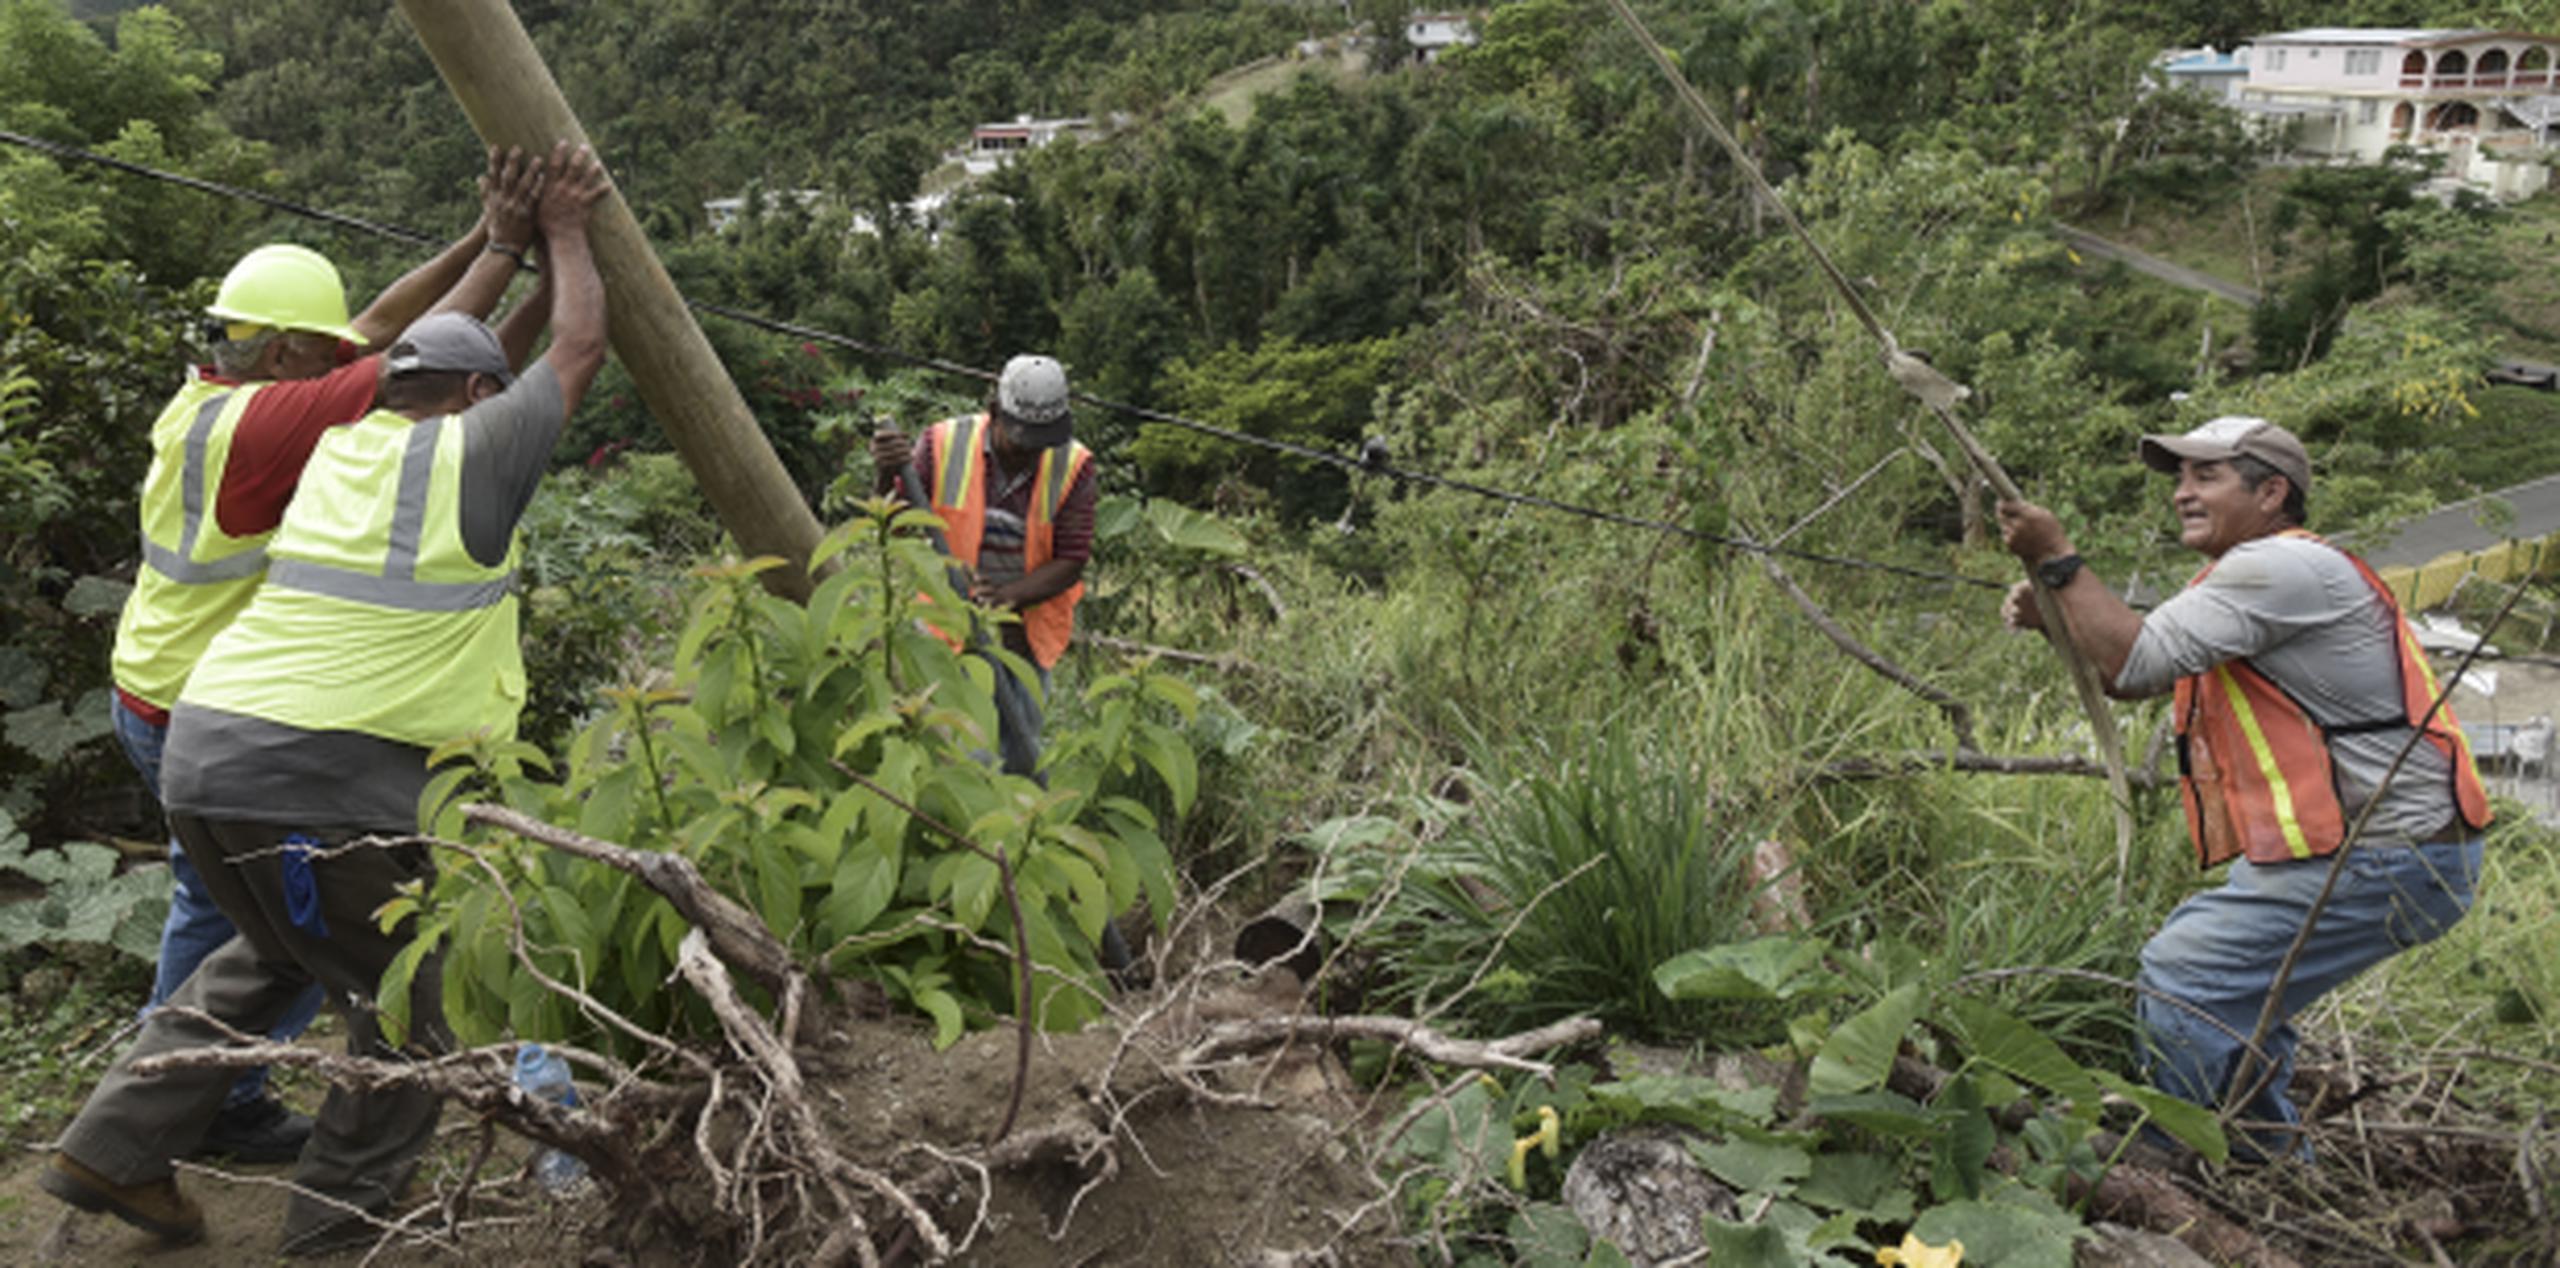 Durante meses, los vecinos suplicaron a la compañía eléctrica de Puerto Rico y al Cuerpo de Ingenieros del Ejército que restablecieran el servicio, con escasos resultados. (AP / Carlos Giusti)